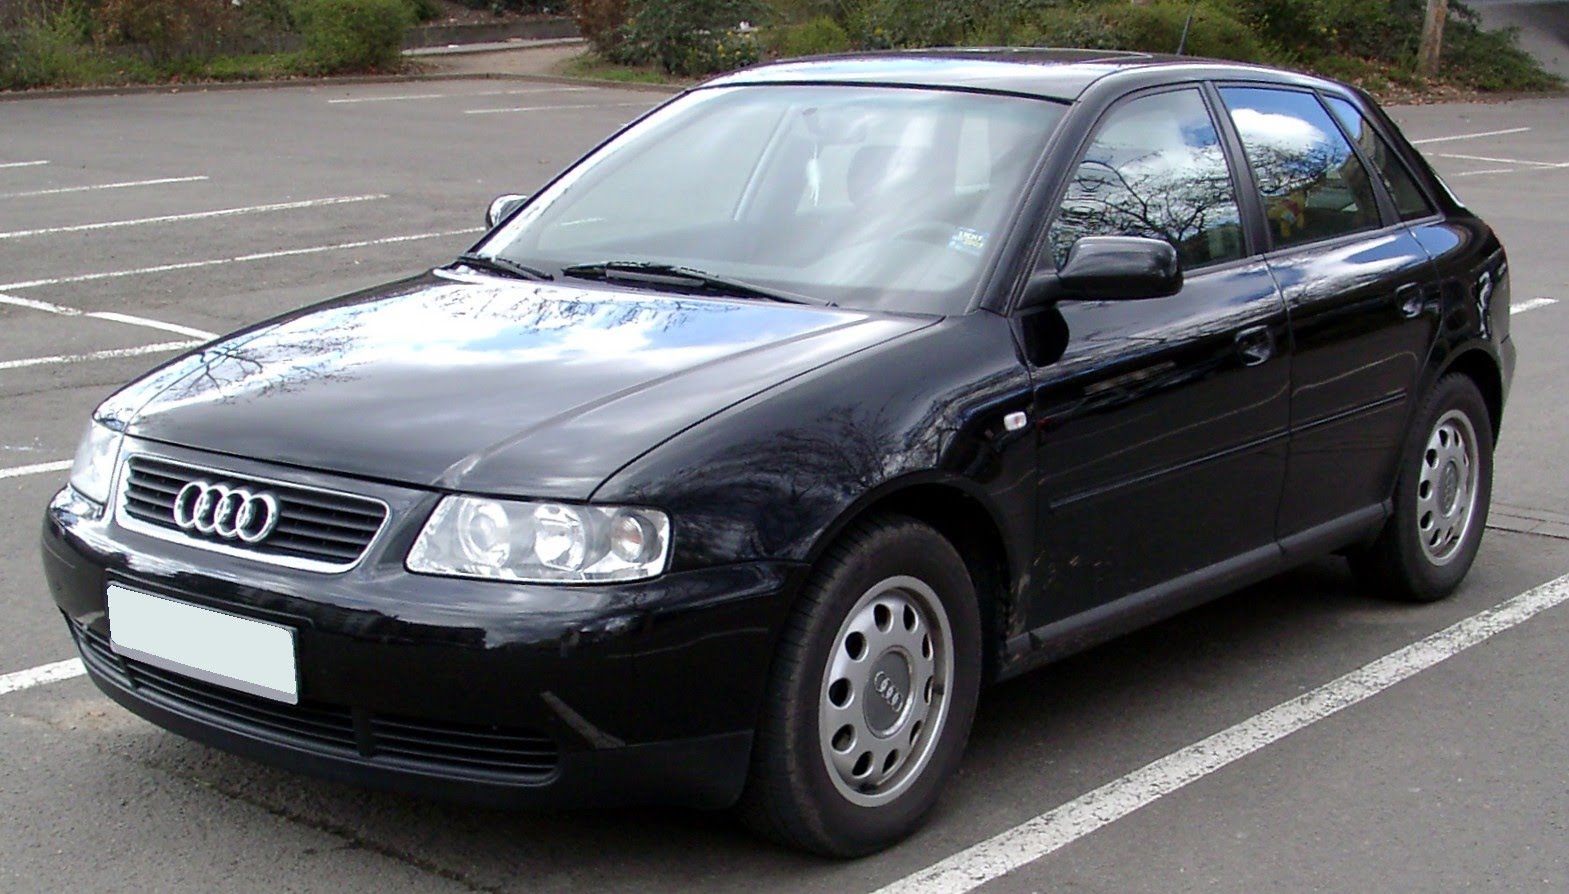  Audi A3 (8L) 